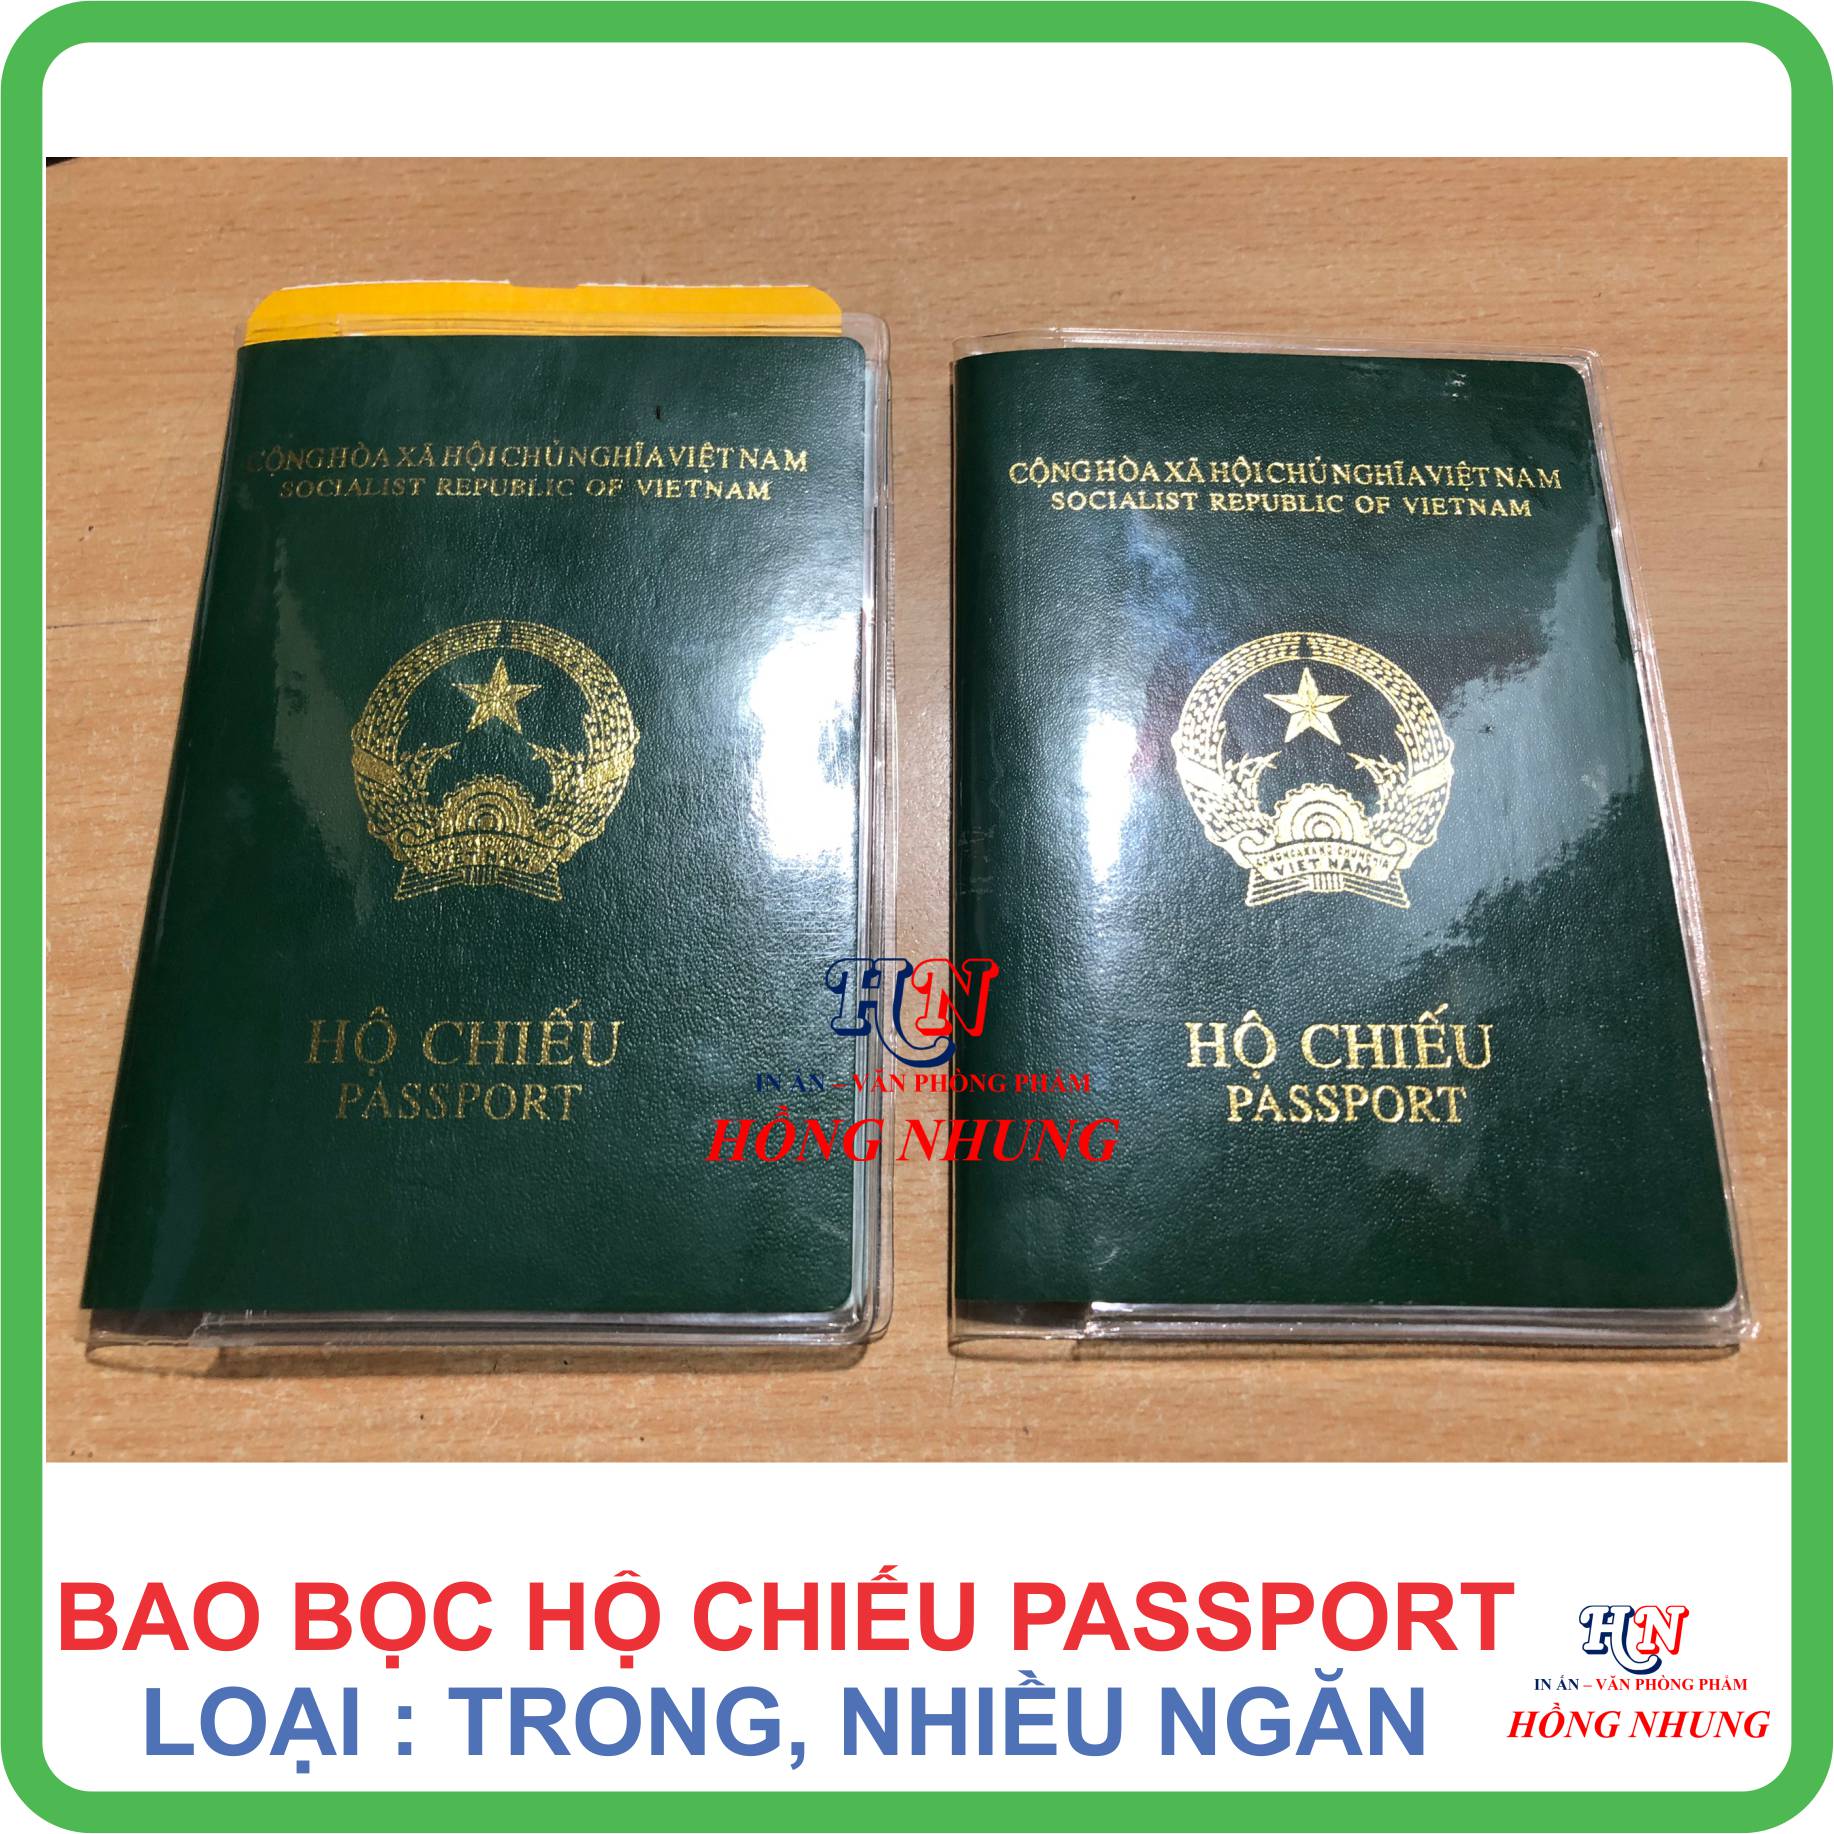 Bao Bọc Hộ Chiếu Passport PVC nhiếu ngăn, Trong Suốt (Chất Liệu Nhựa Dẻo Chống Thấm nước)